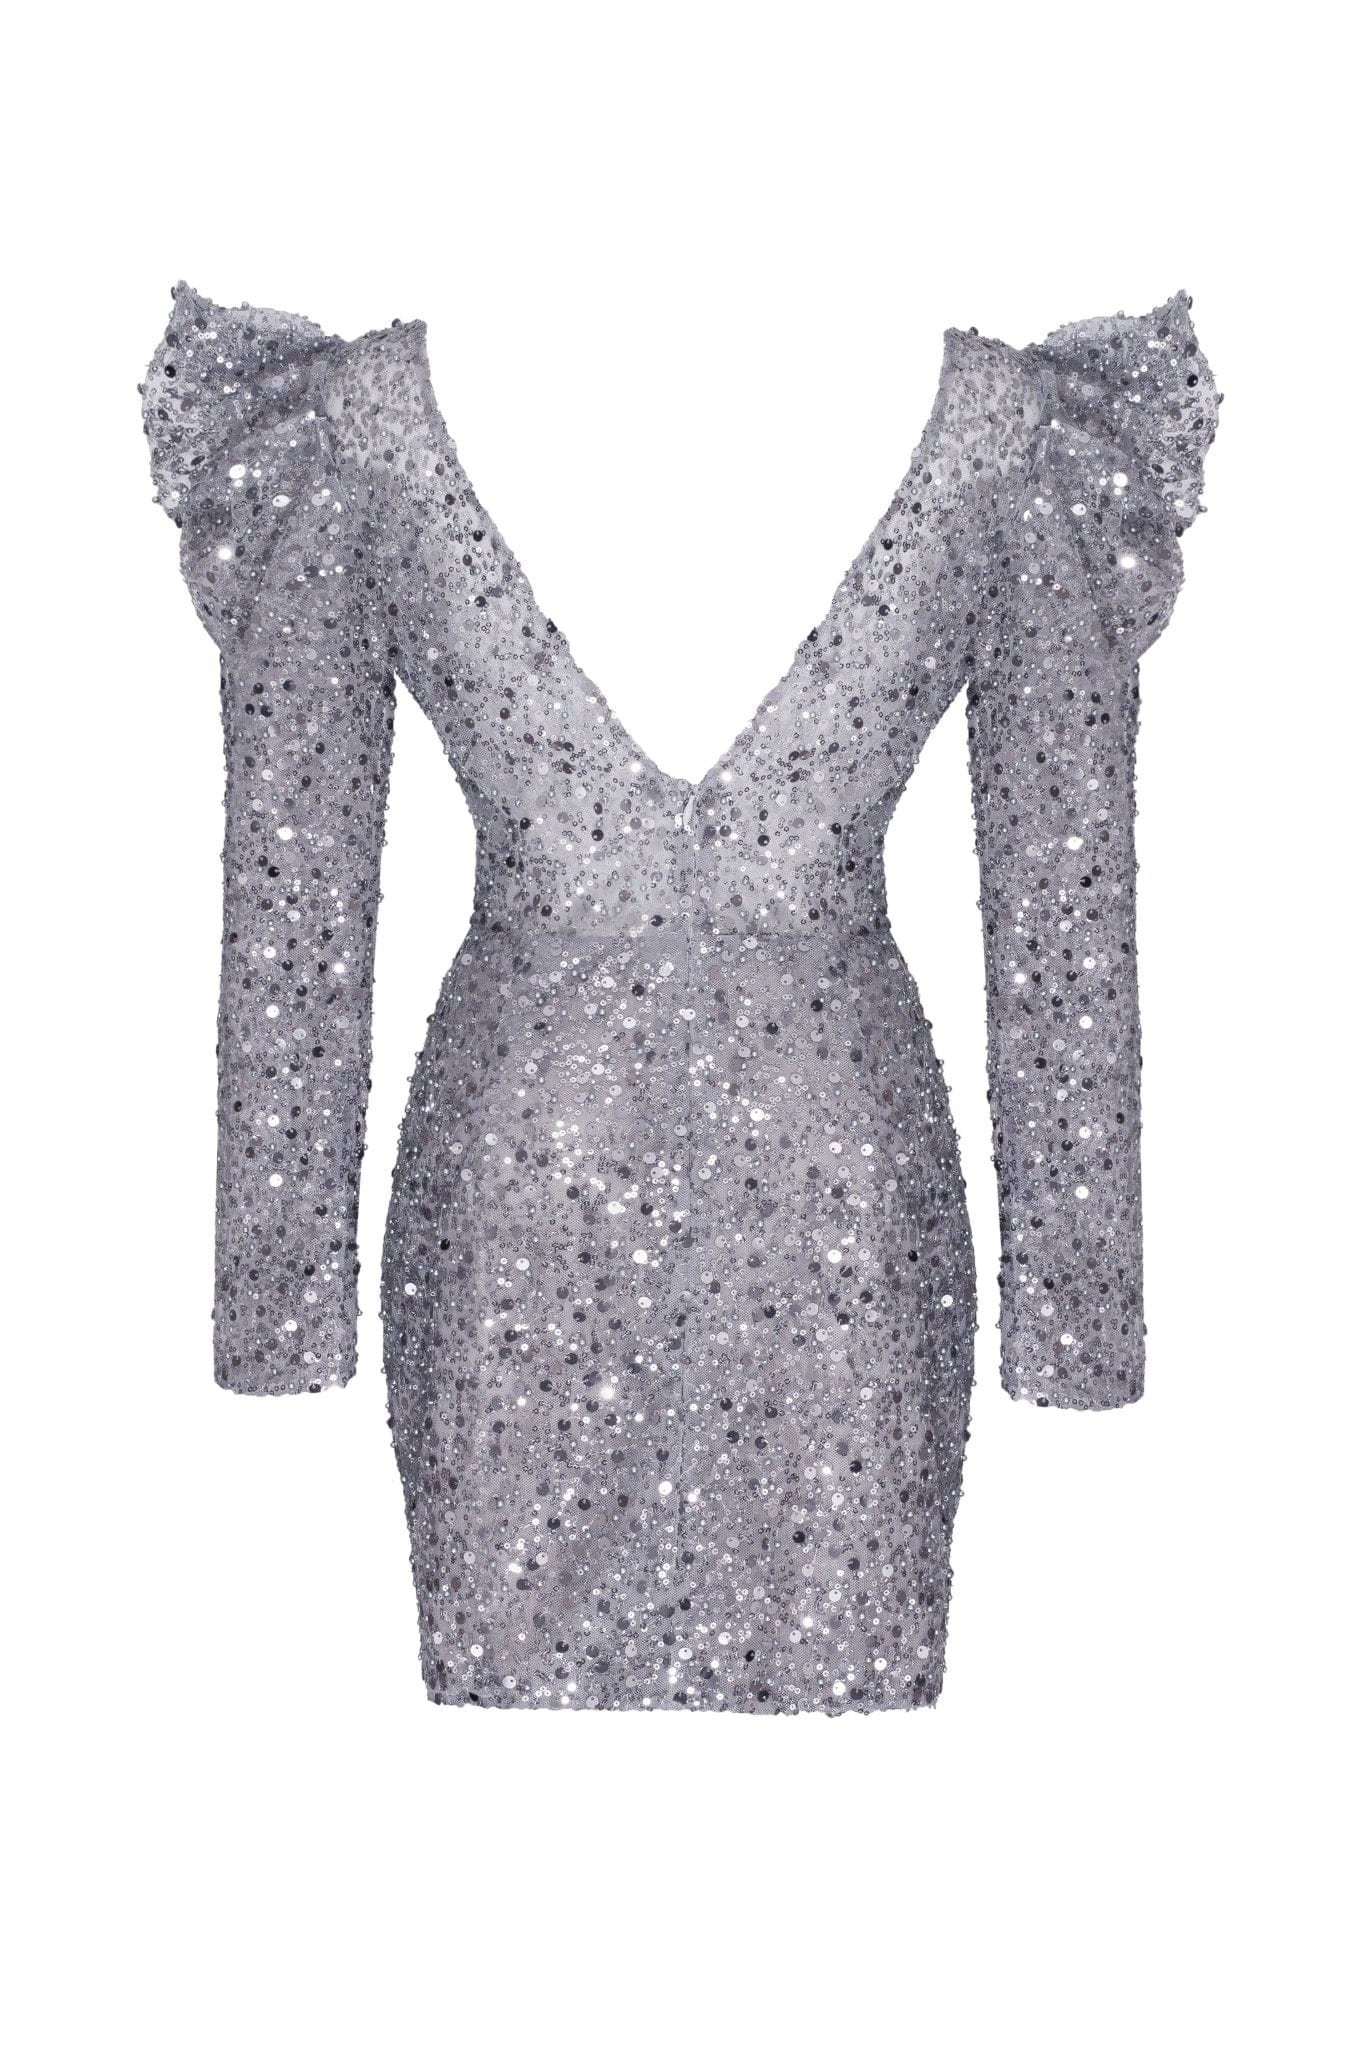 Elegant black off-the-shoulder sparkling maxi dress ➤➤ Milla Dresses - USA,  Worldwide delivery